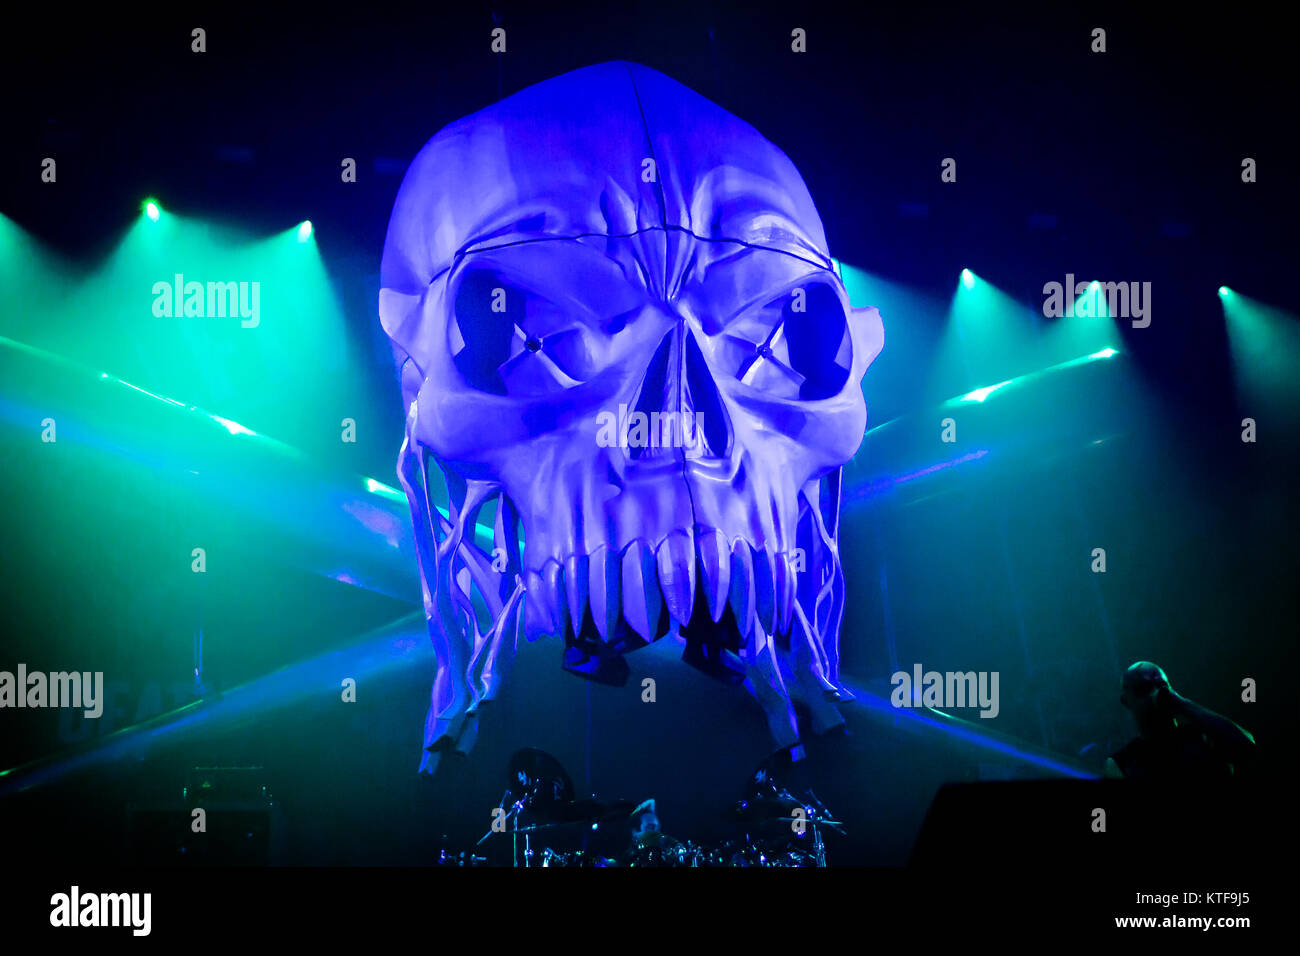 Norwegen, Oslo - November 18, 2017. Five Finger Death Punch, die Amerikanische heavy Band, führt ein Live Konzert in Oslo Spektrum. Hier ein riesiger Schädel ist über das Drum Kit. (Foto: Gonzales Foto - Terje Dokken). Stockfoto